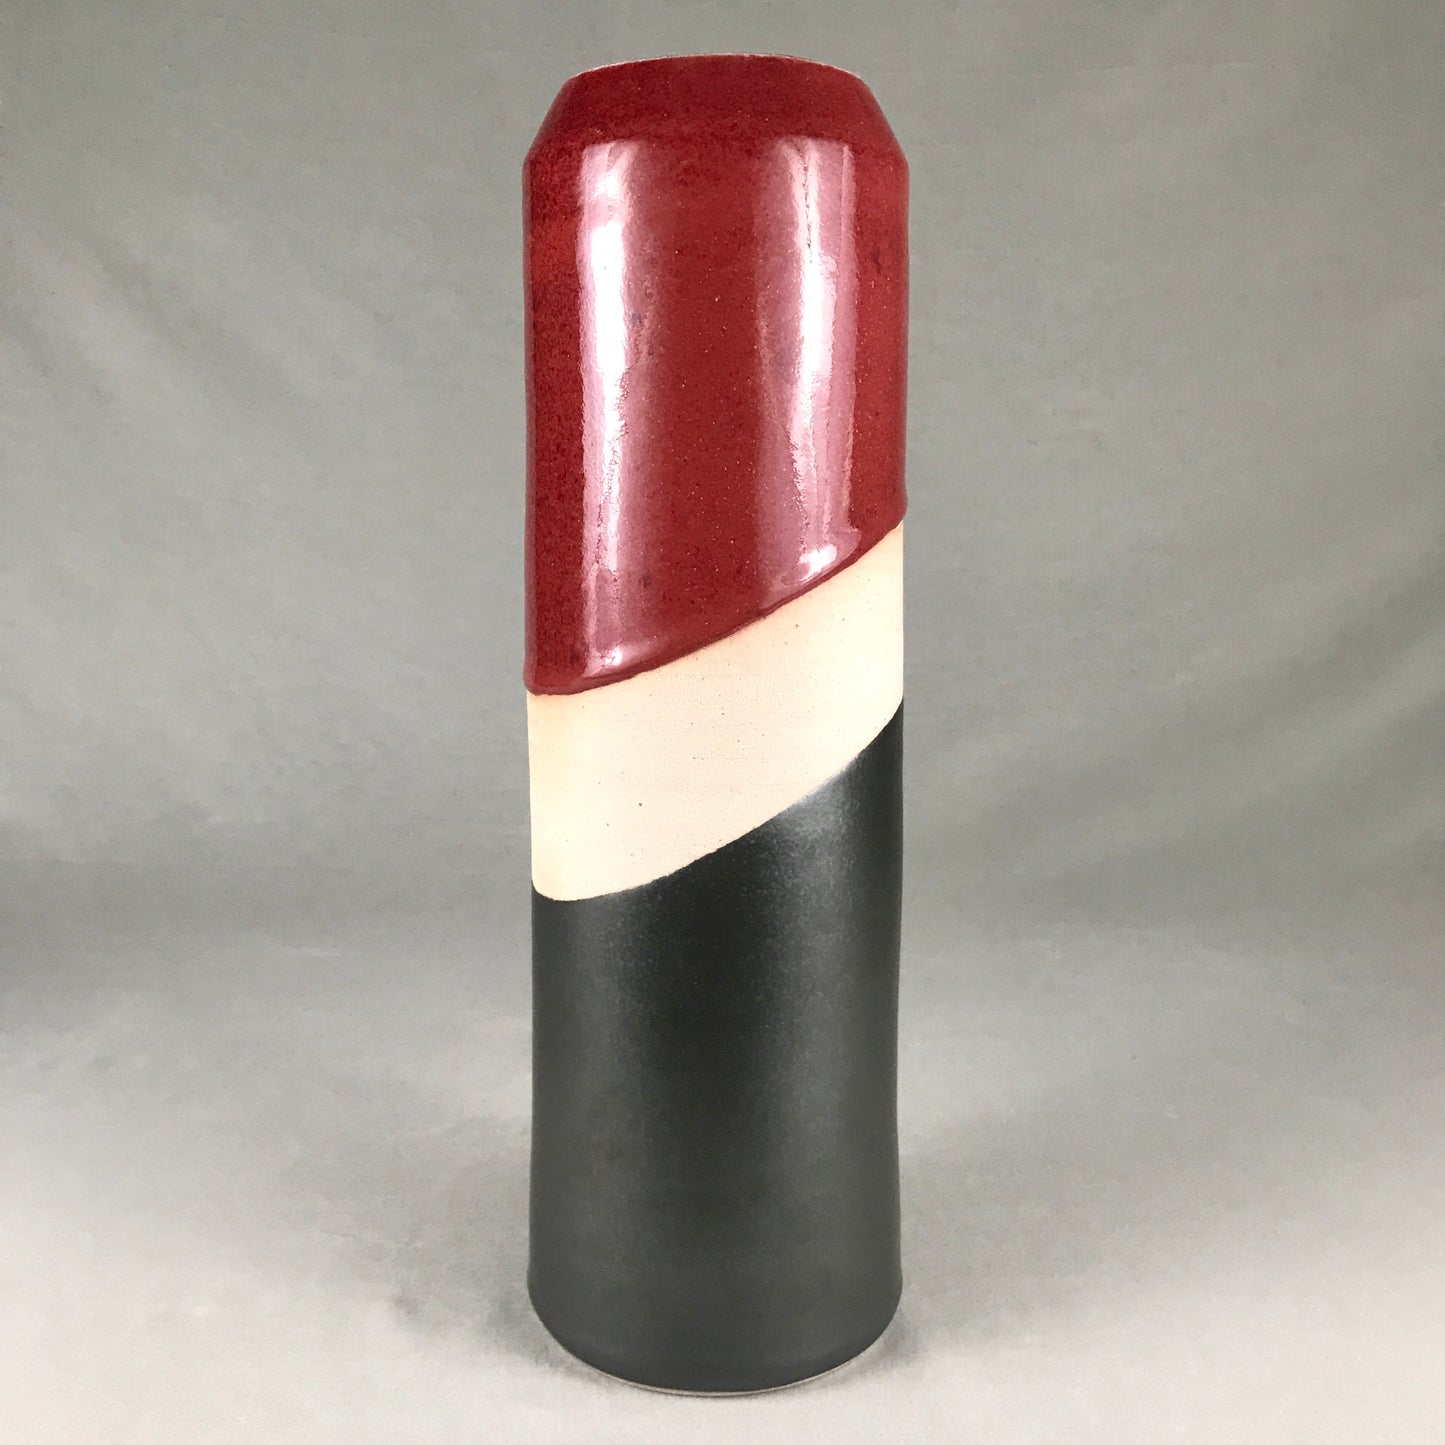 Tall Black & Red Vase II